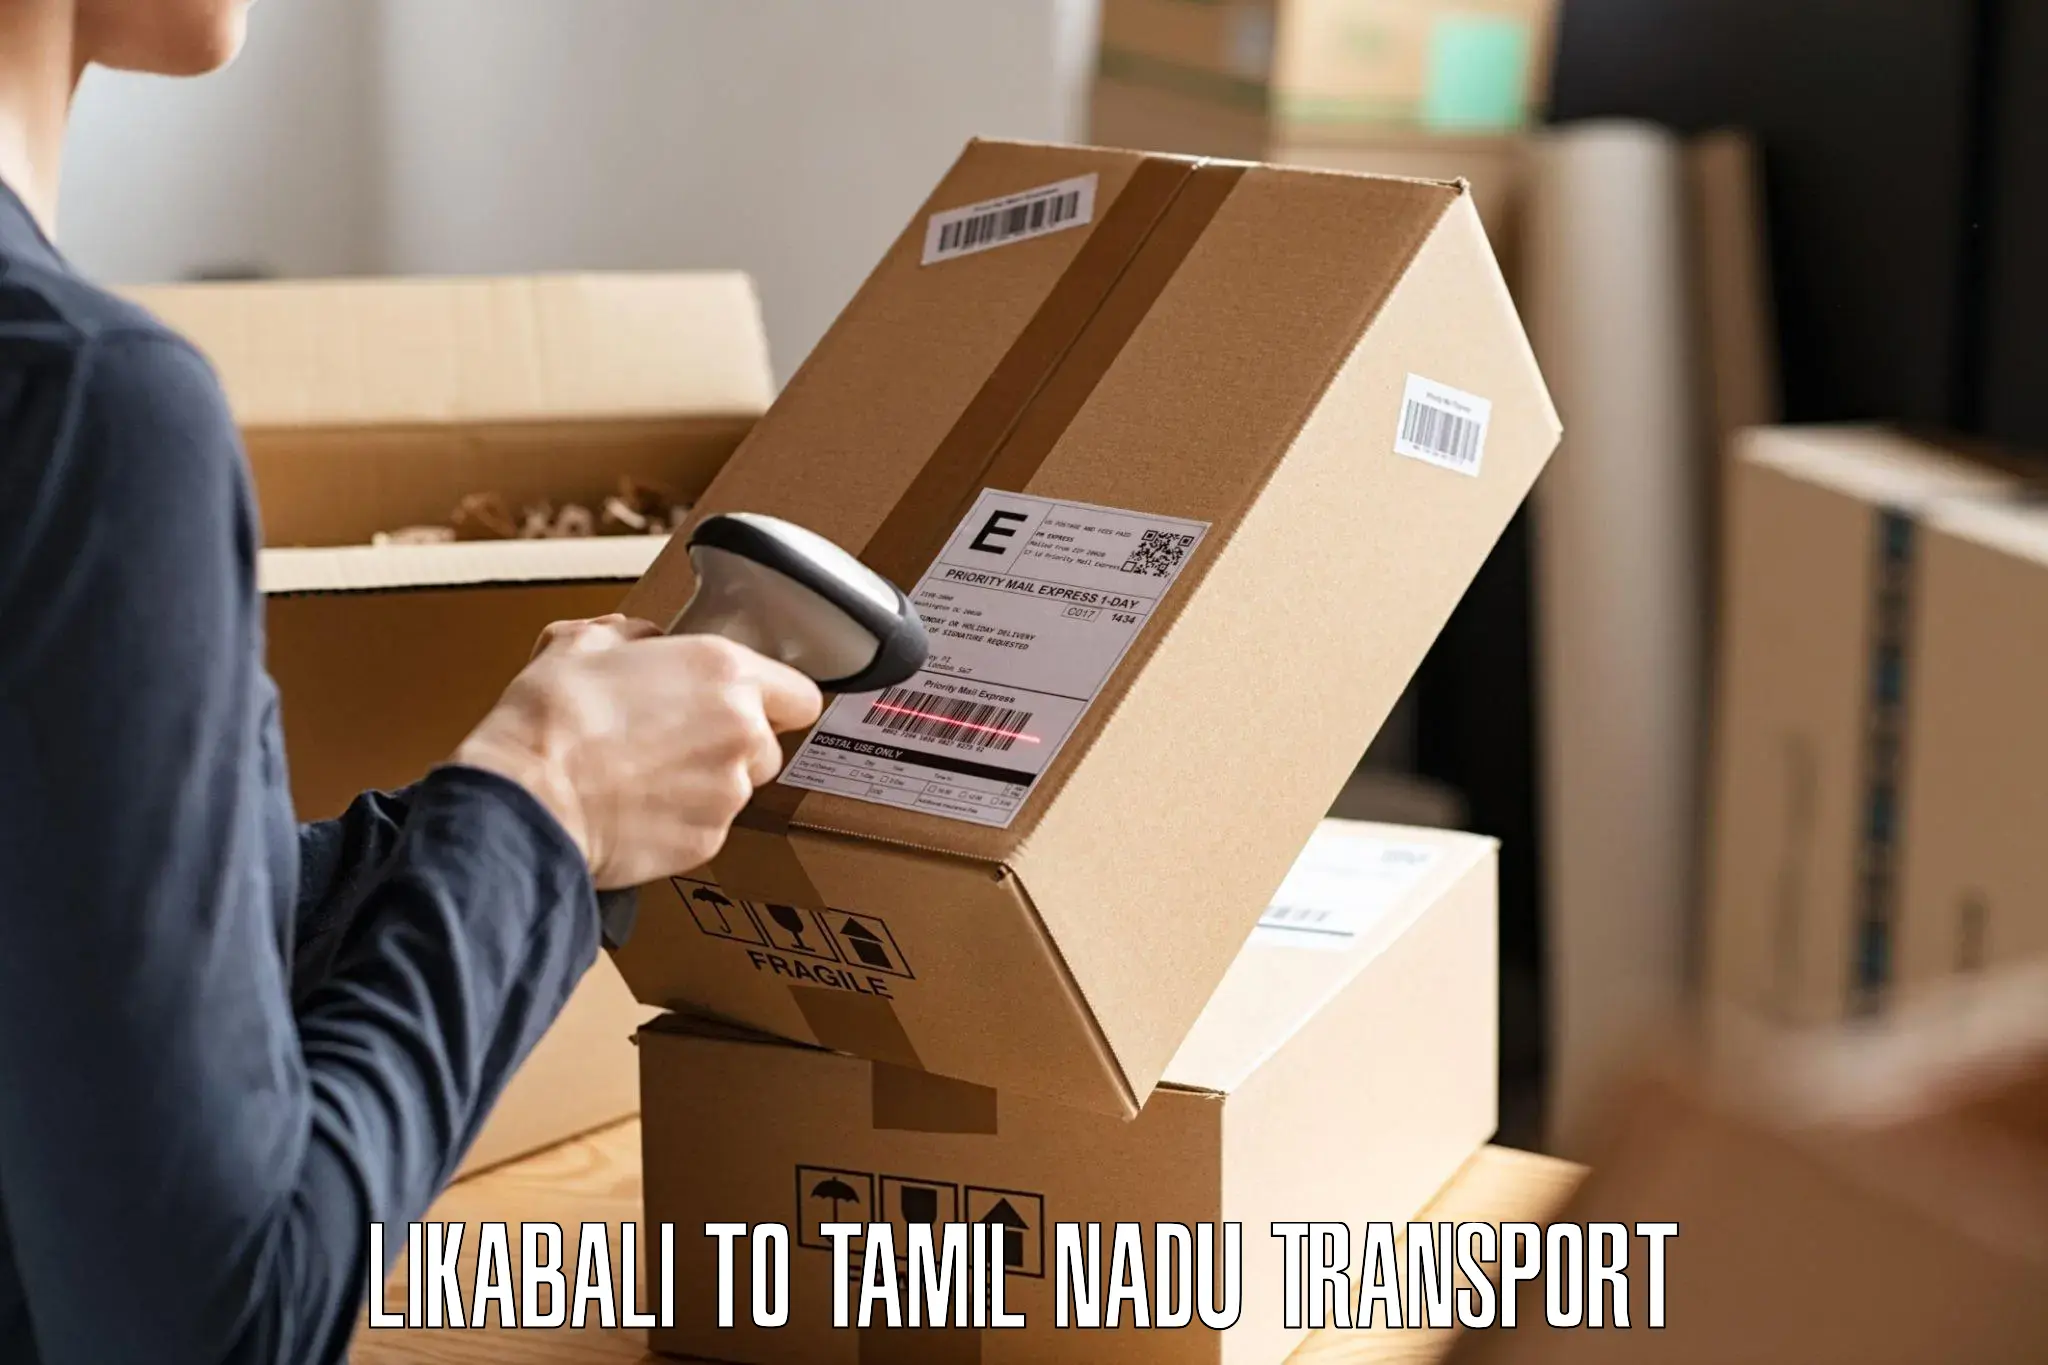 Shipping services Likabali to Nagapattinam